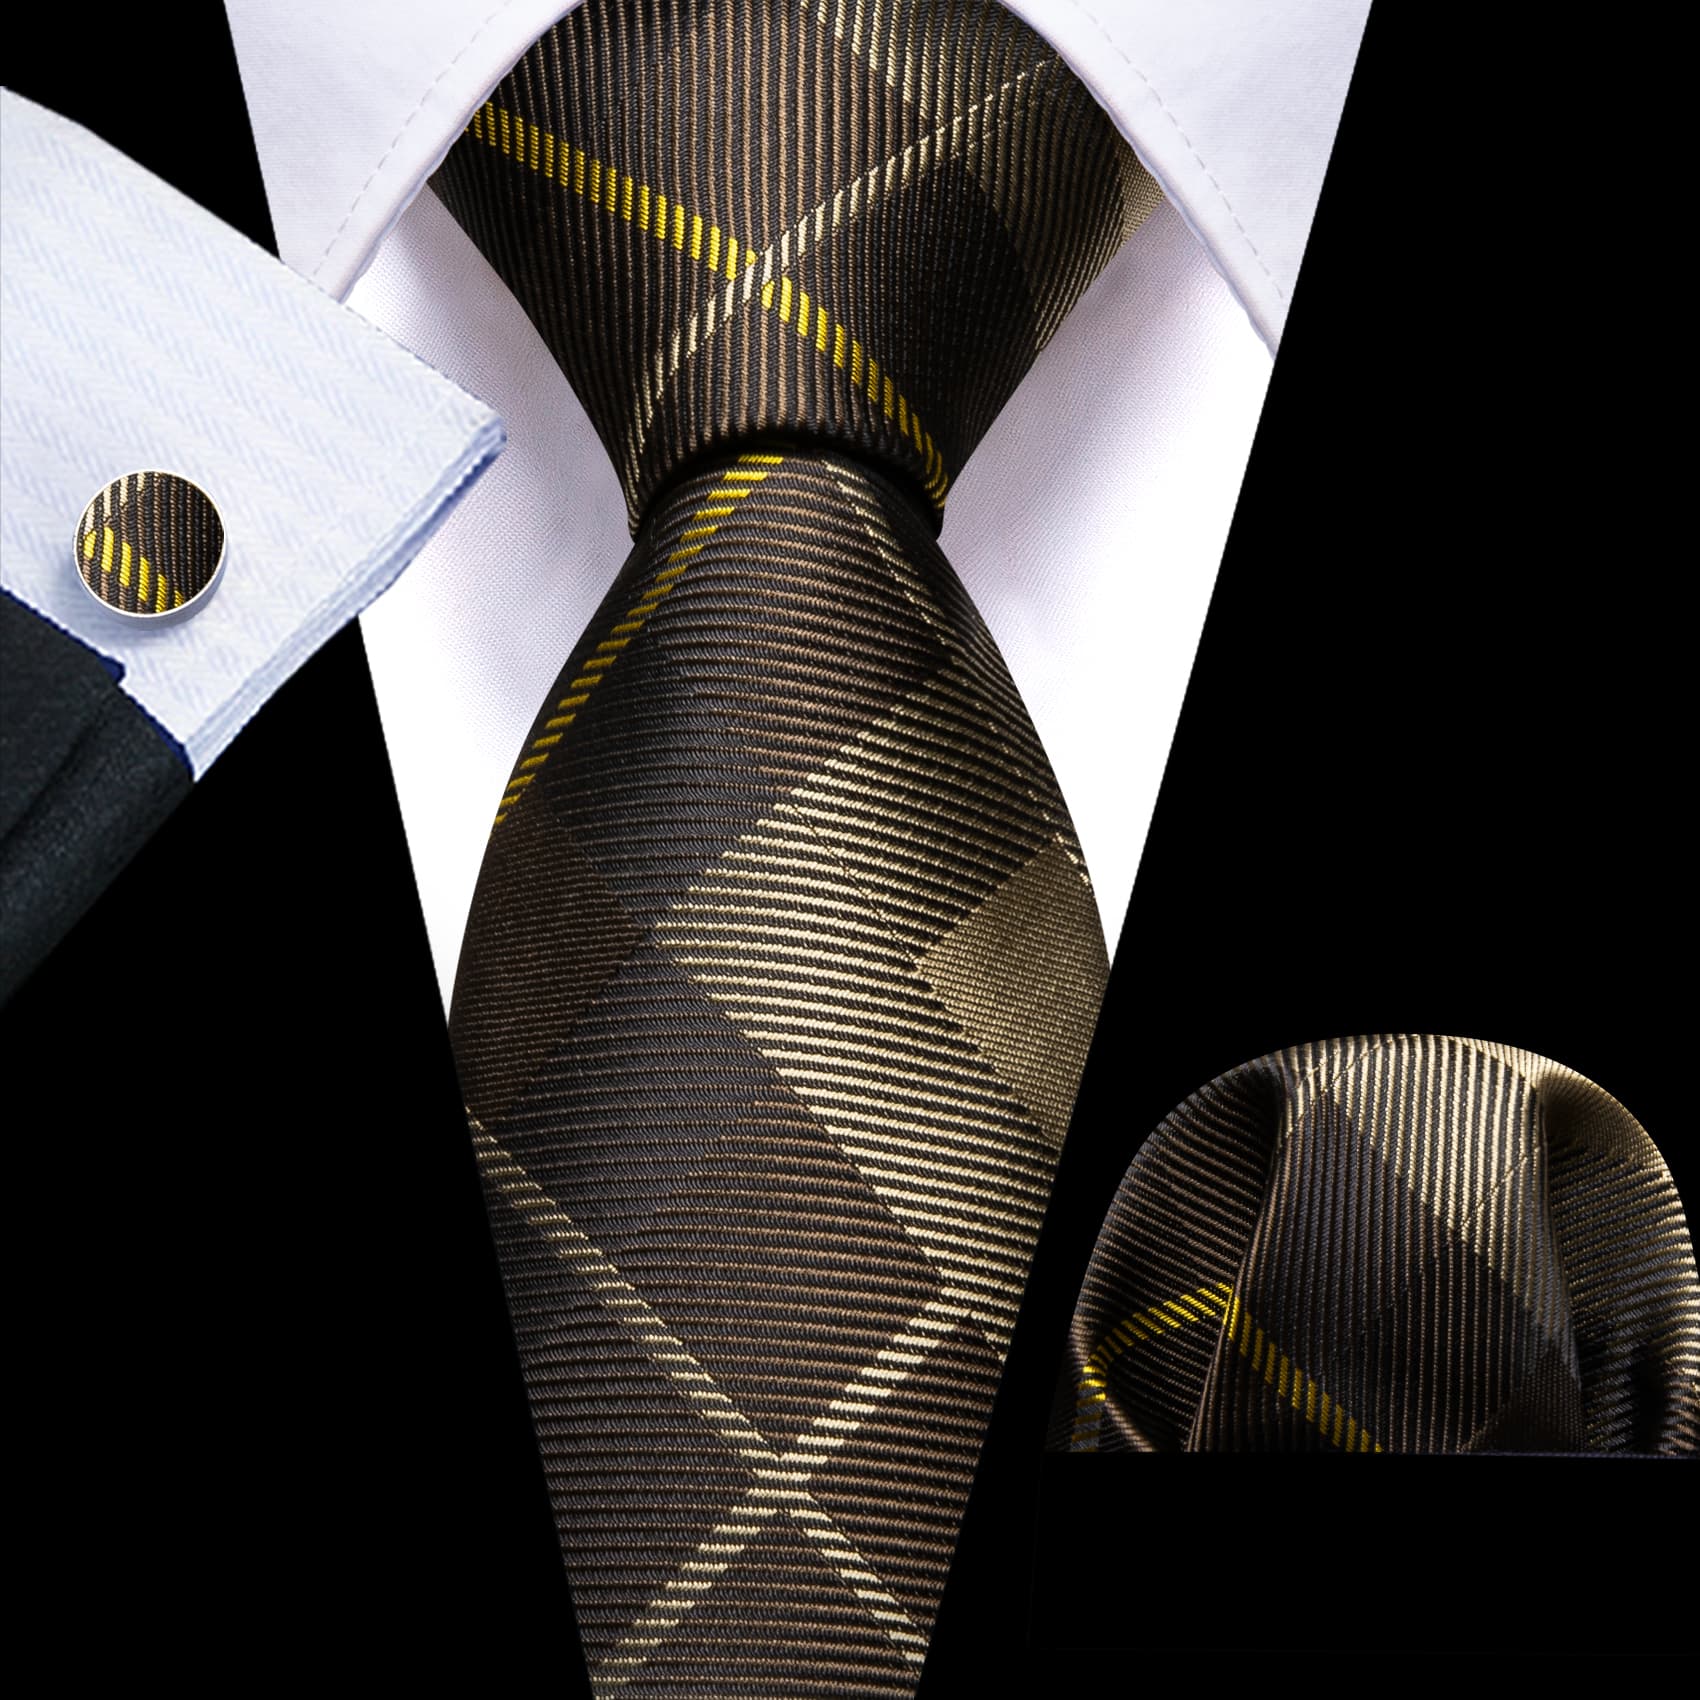 Plaid Tie Dark Brown Tan checkered Necktie and Cufflink Set